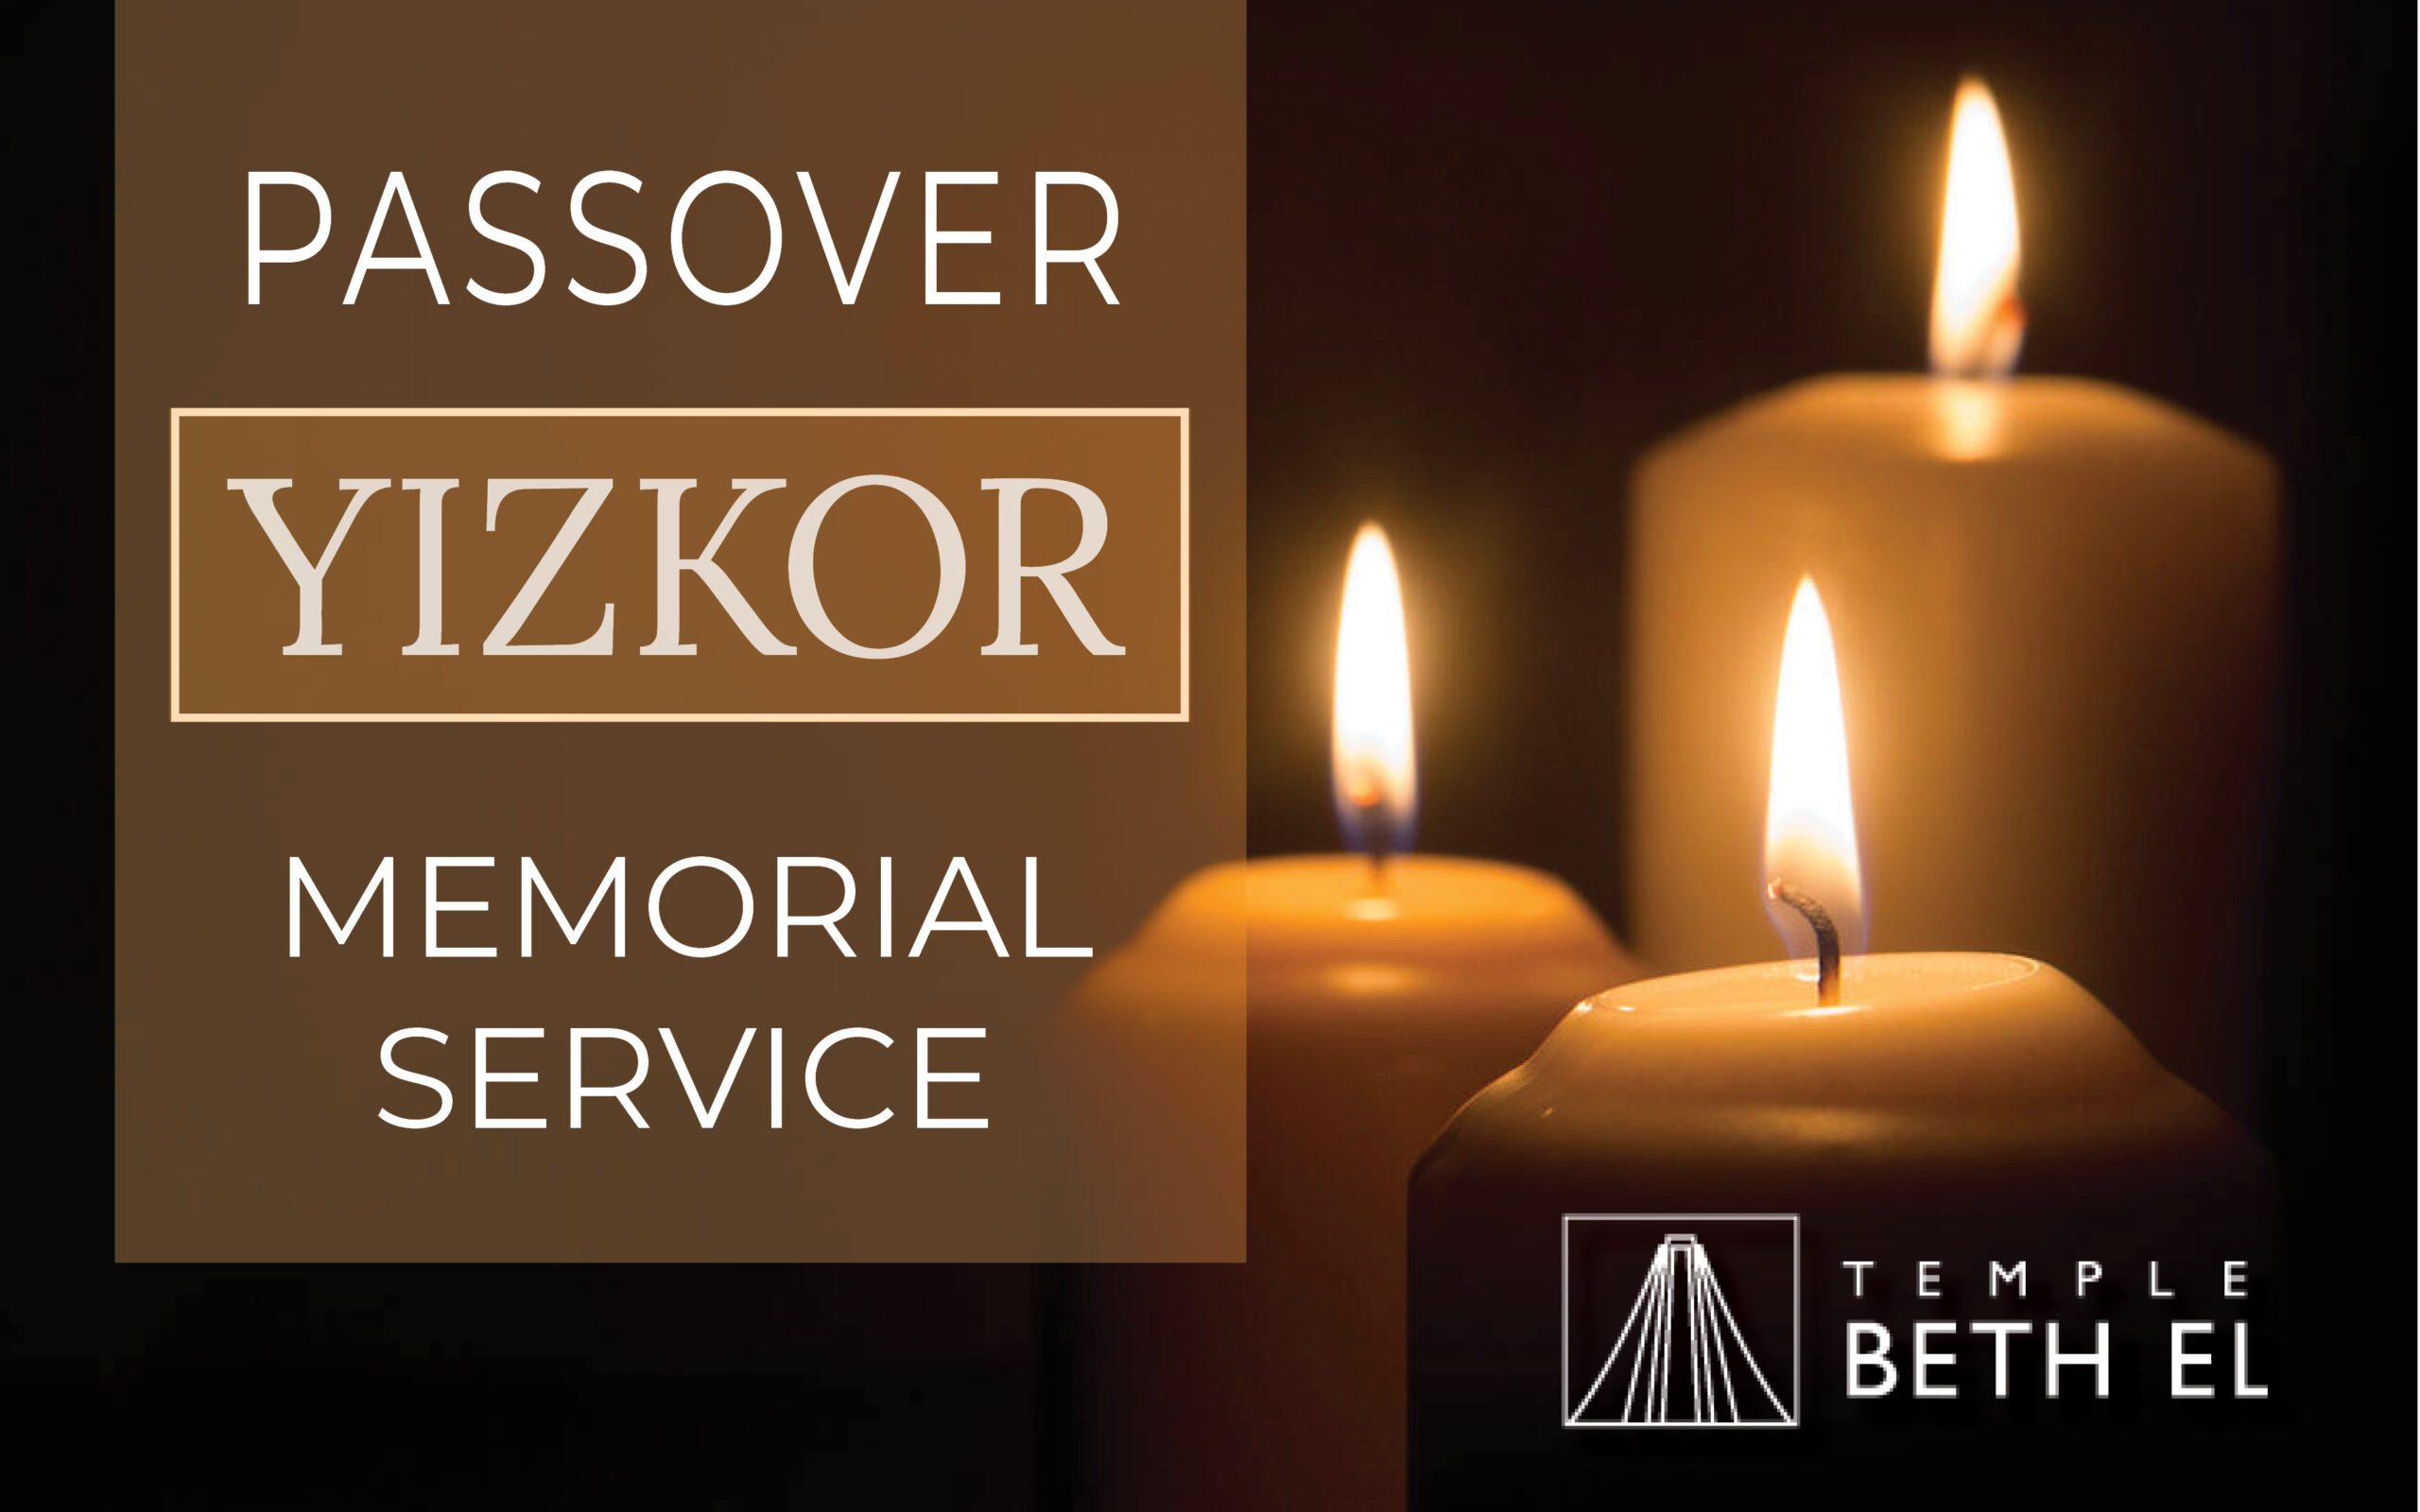 Passover Yizkor Service